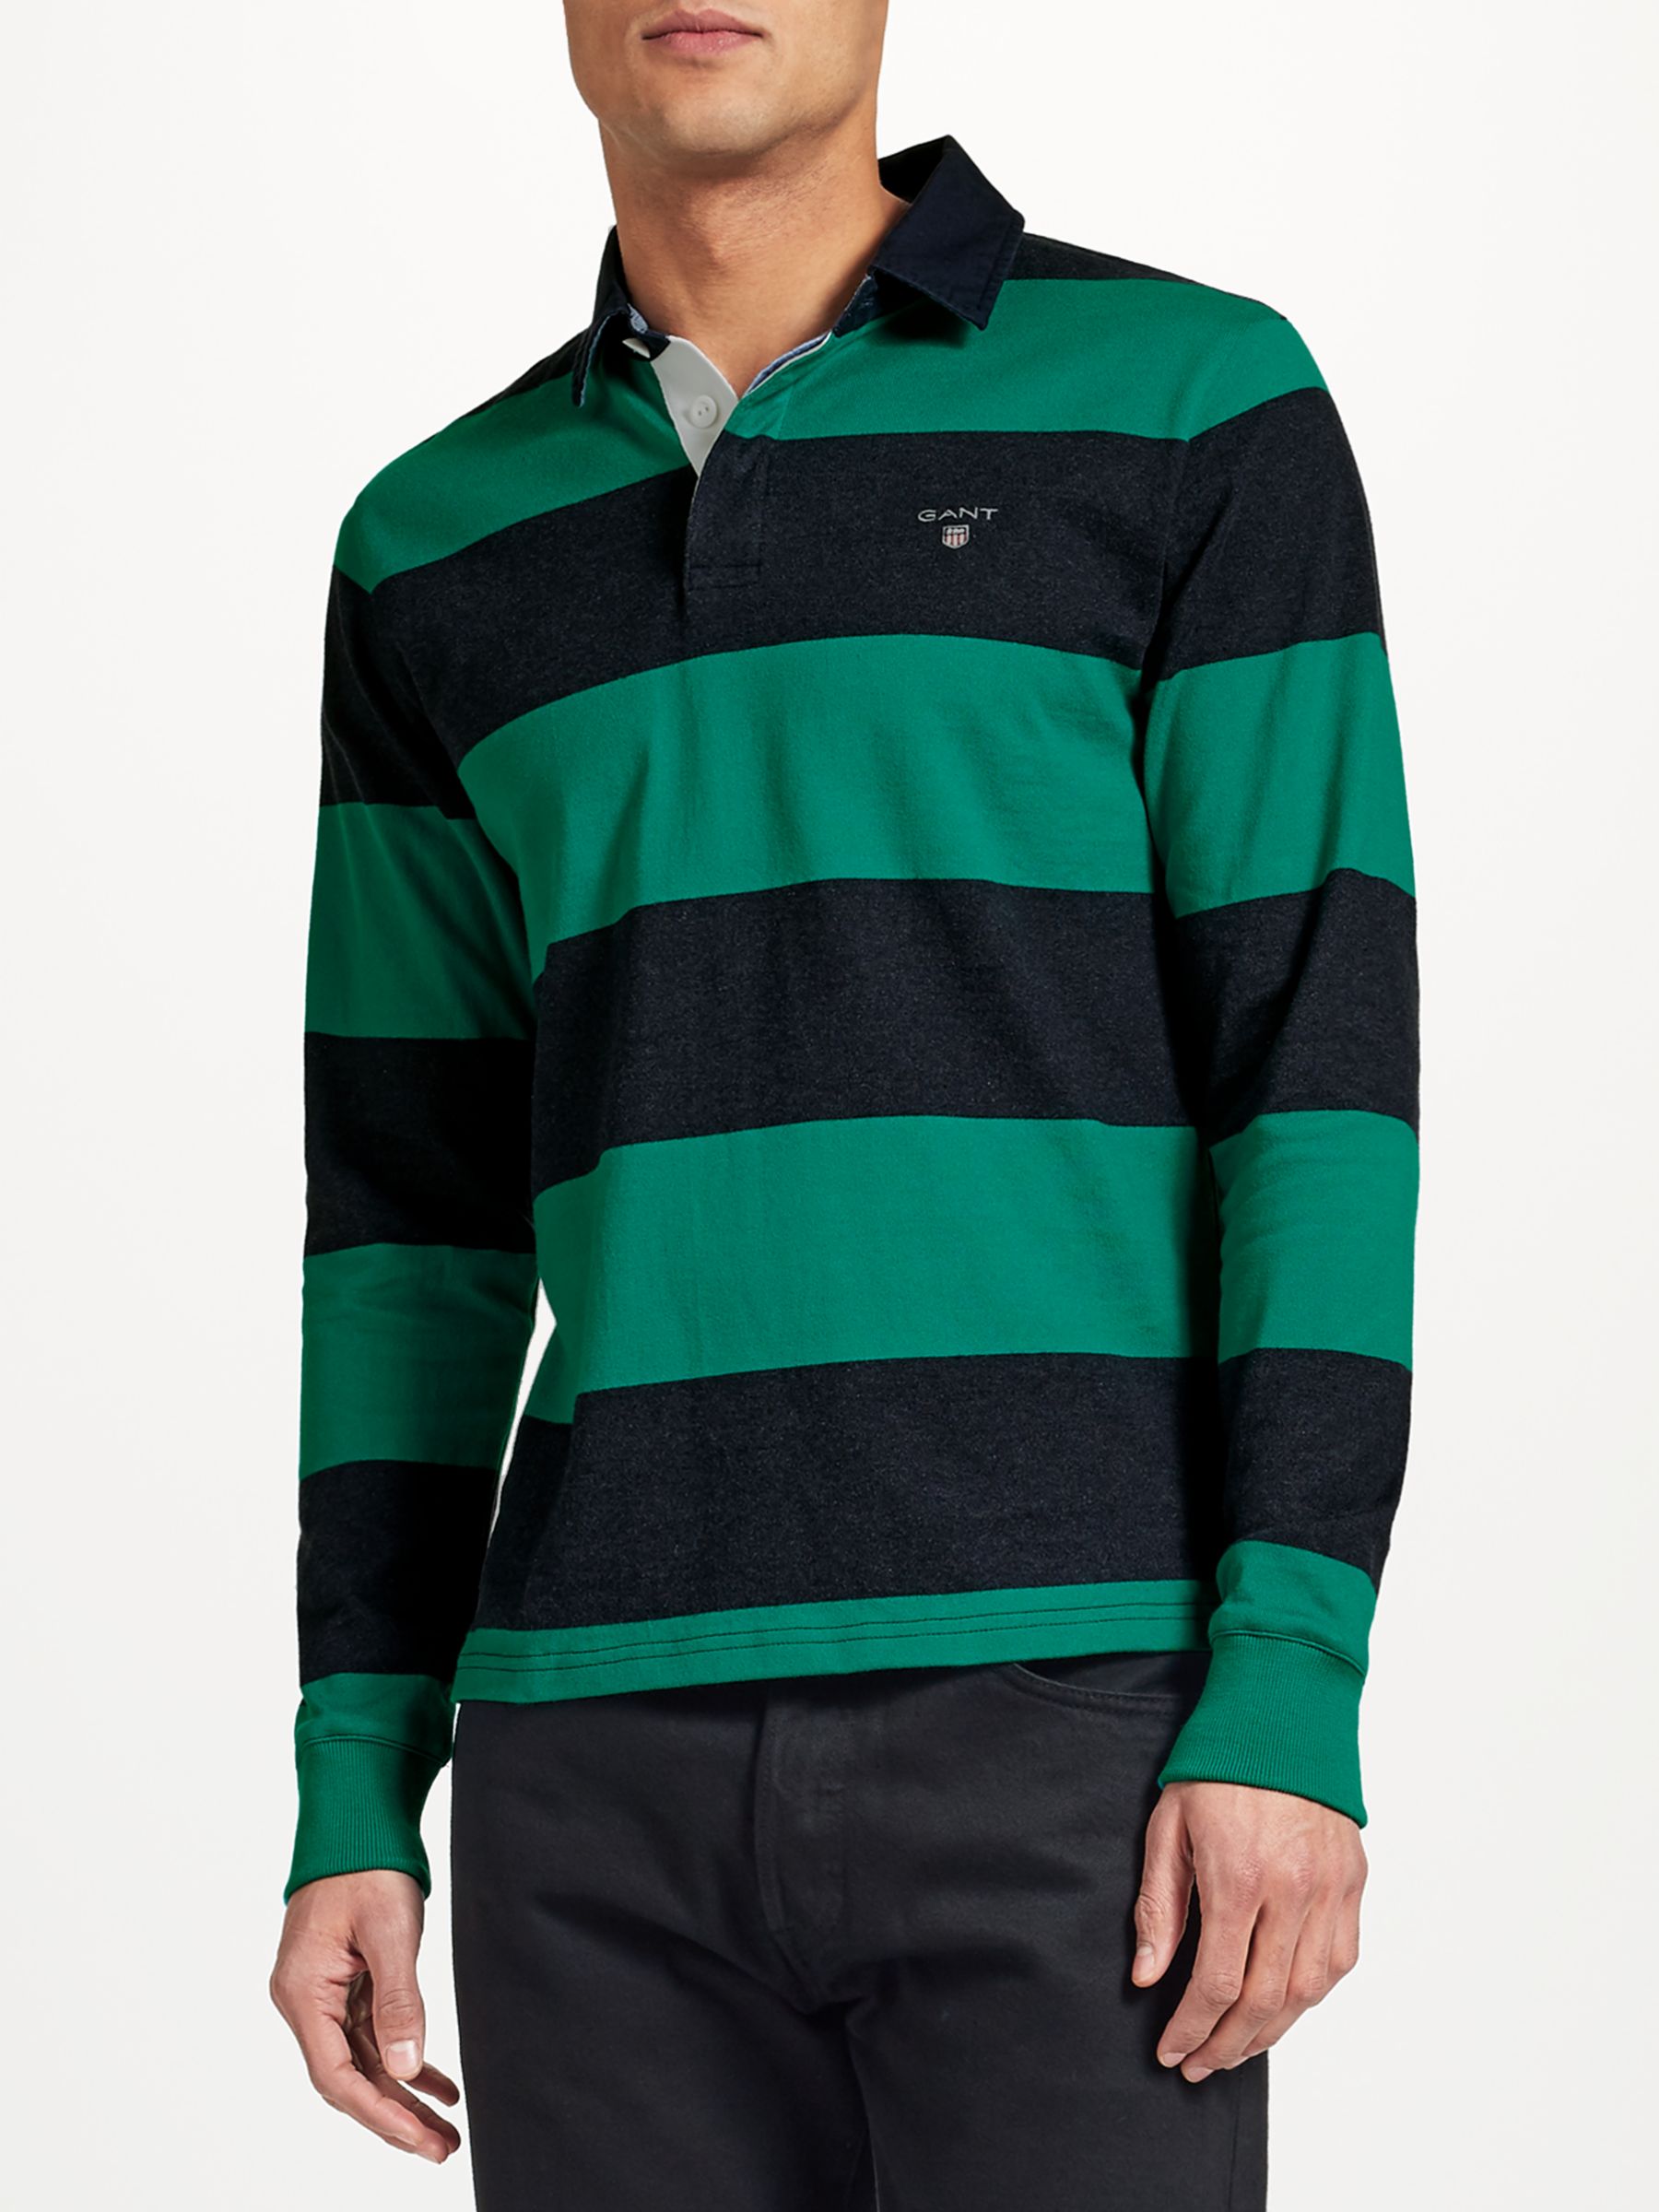 GANT Rugger Bar Stripe Heavy Jersey Rugby Shirt, Emerald Green, XXXL